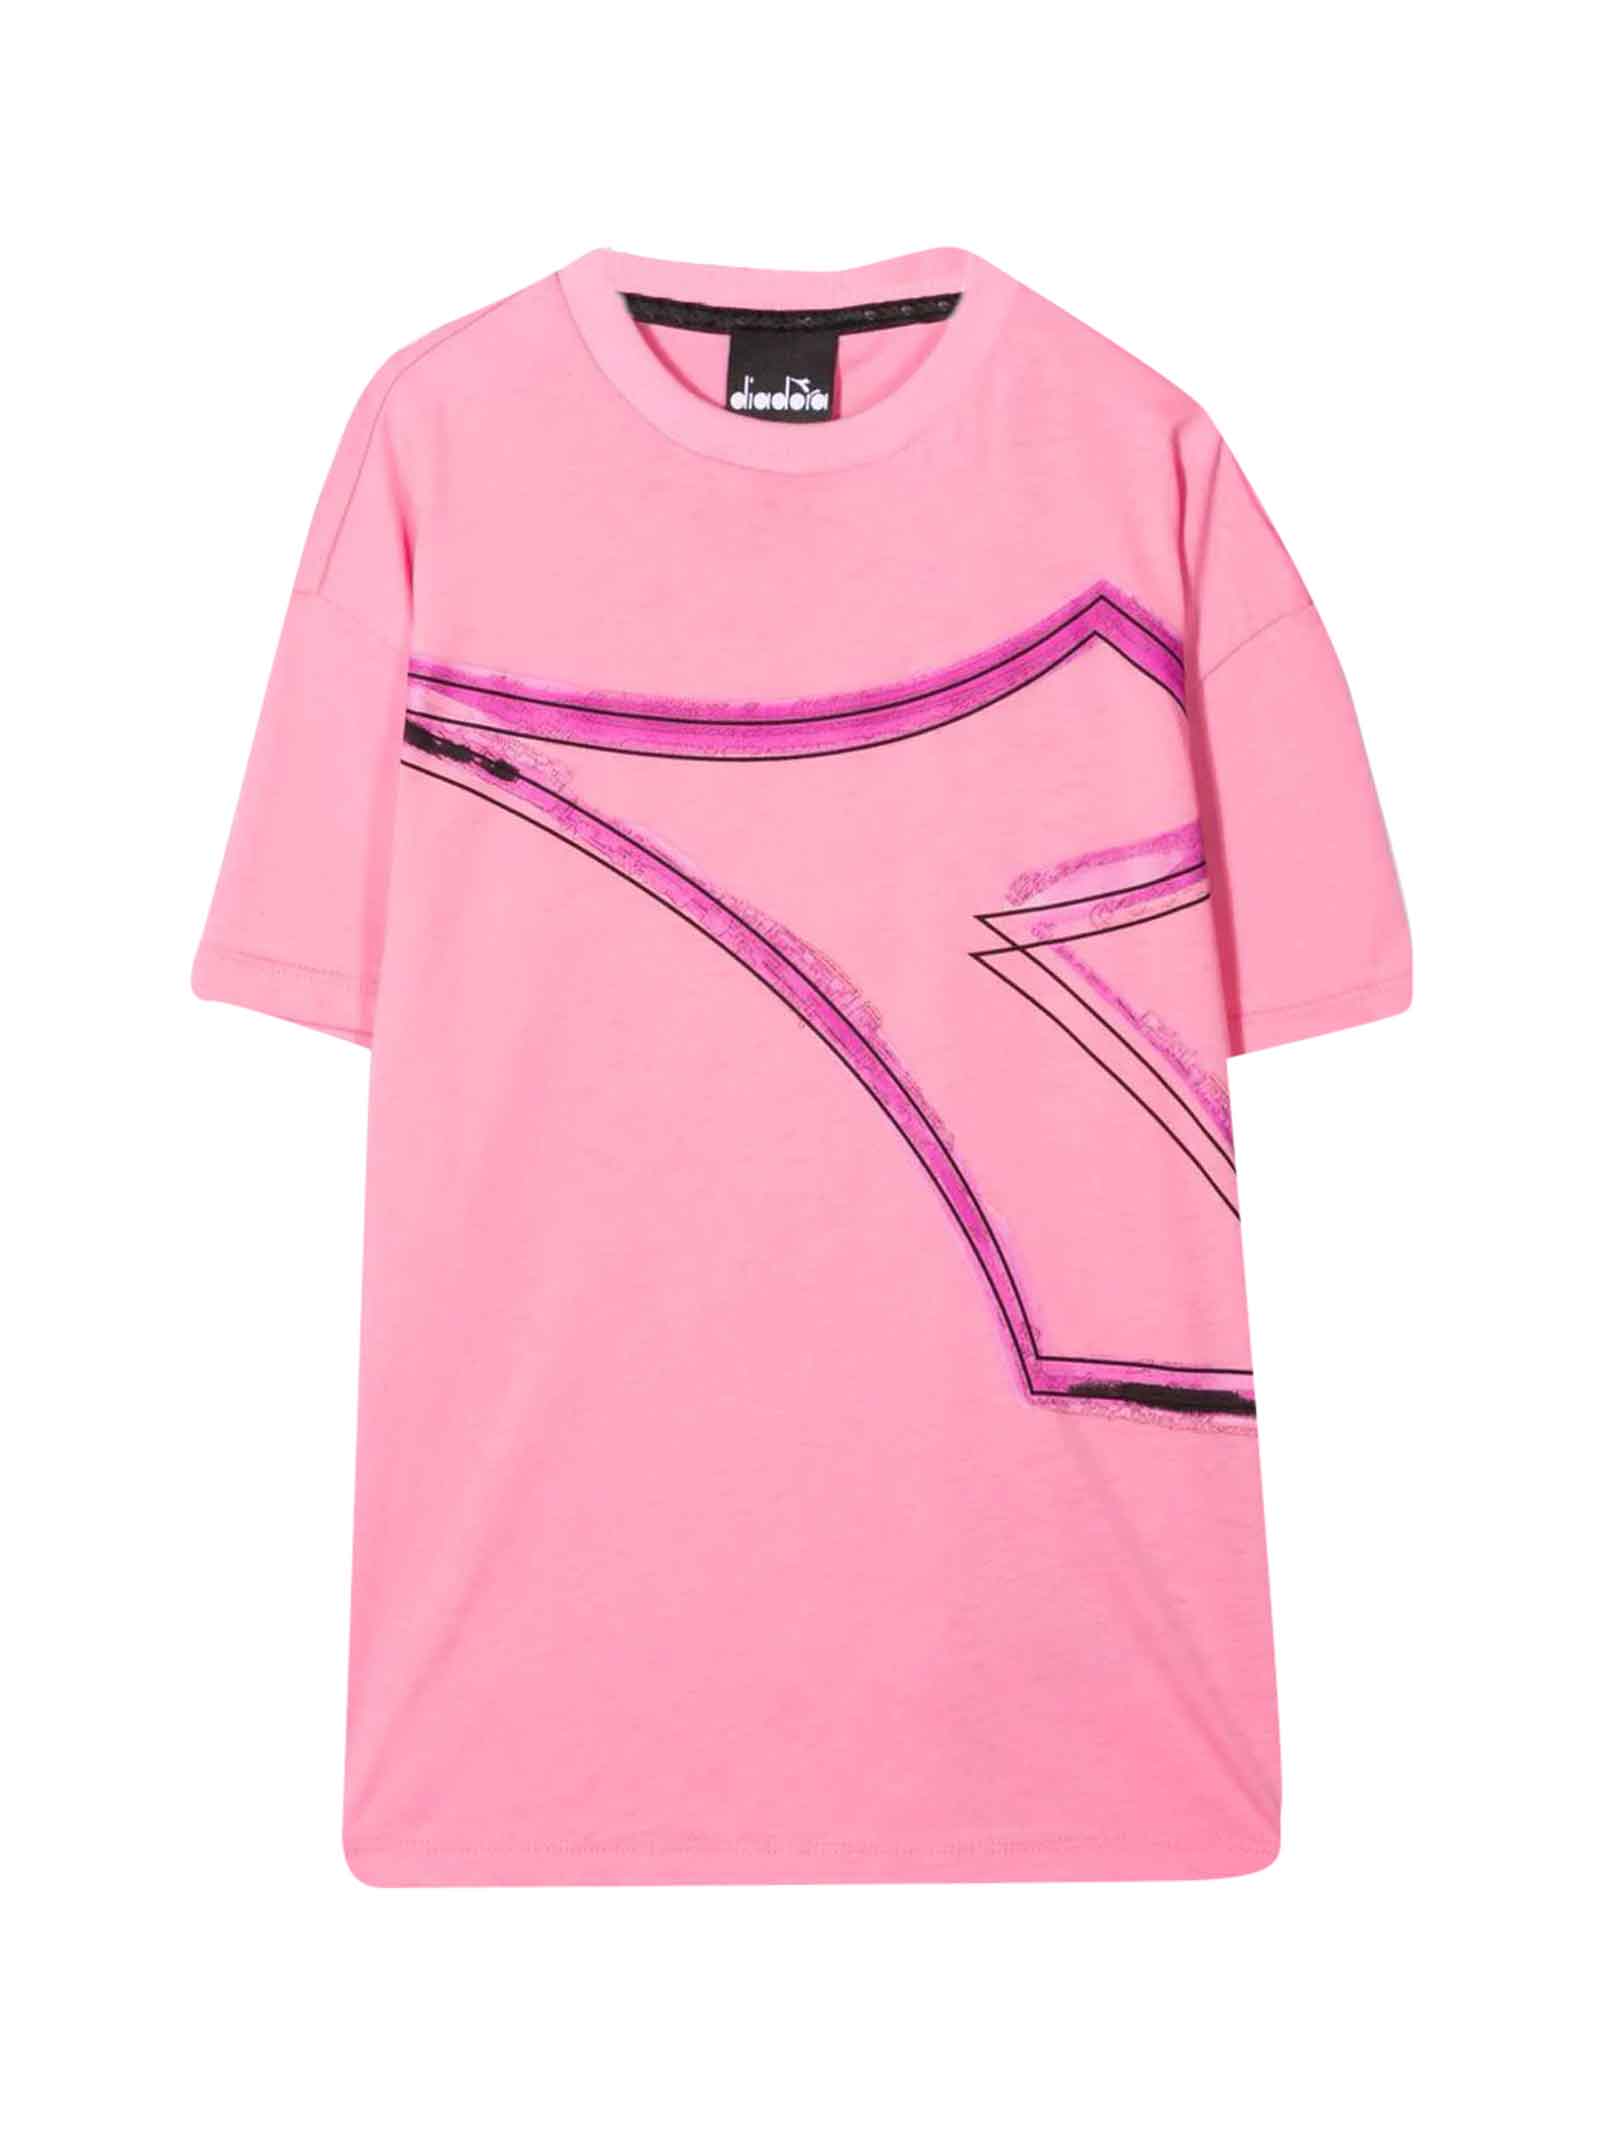 Diadora Pink T-shirt